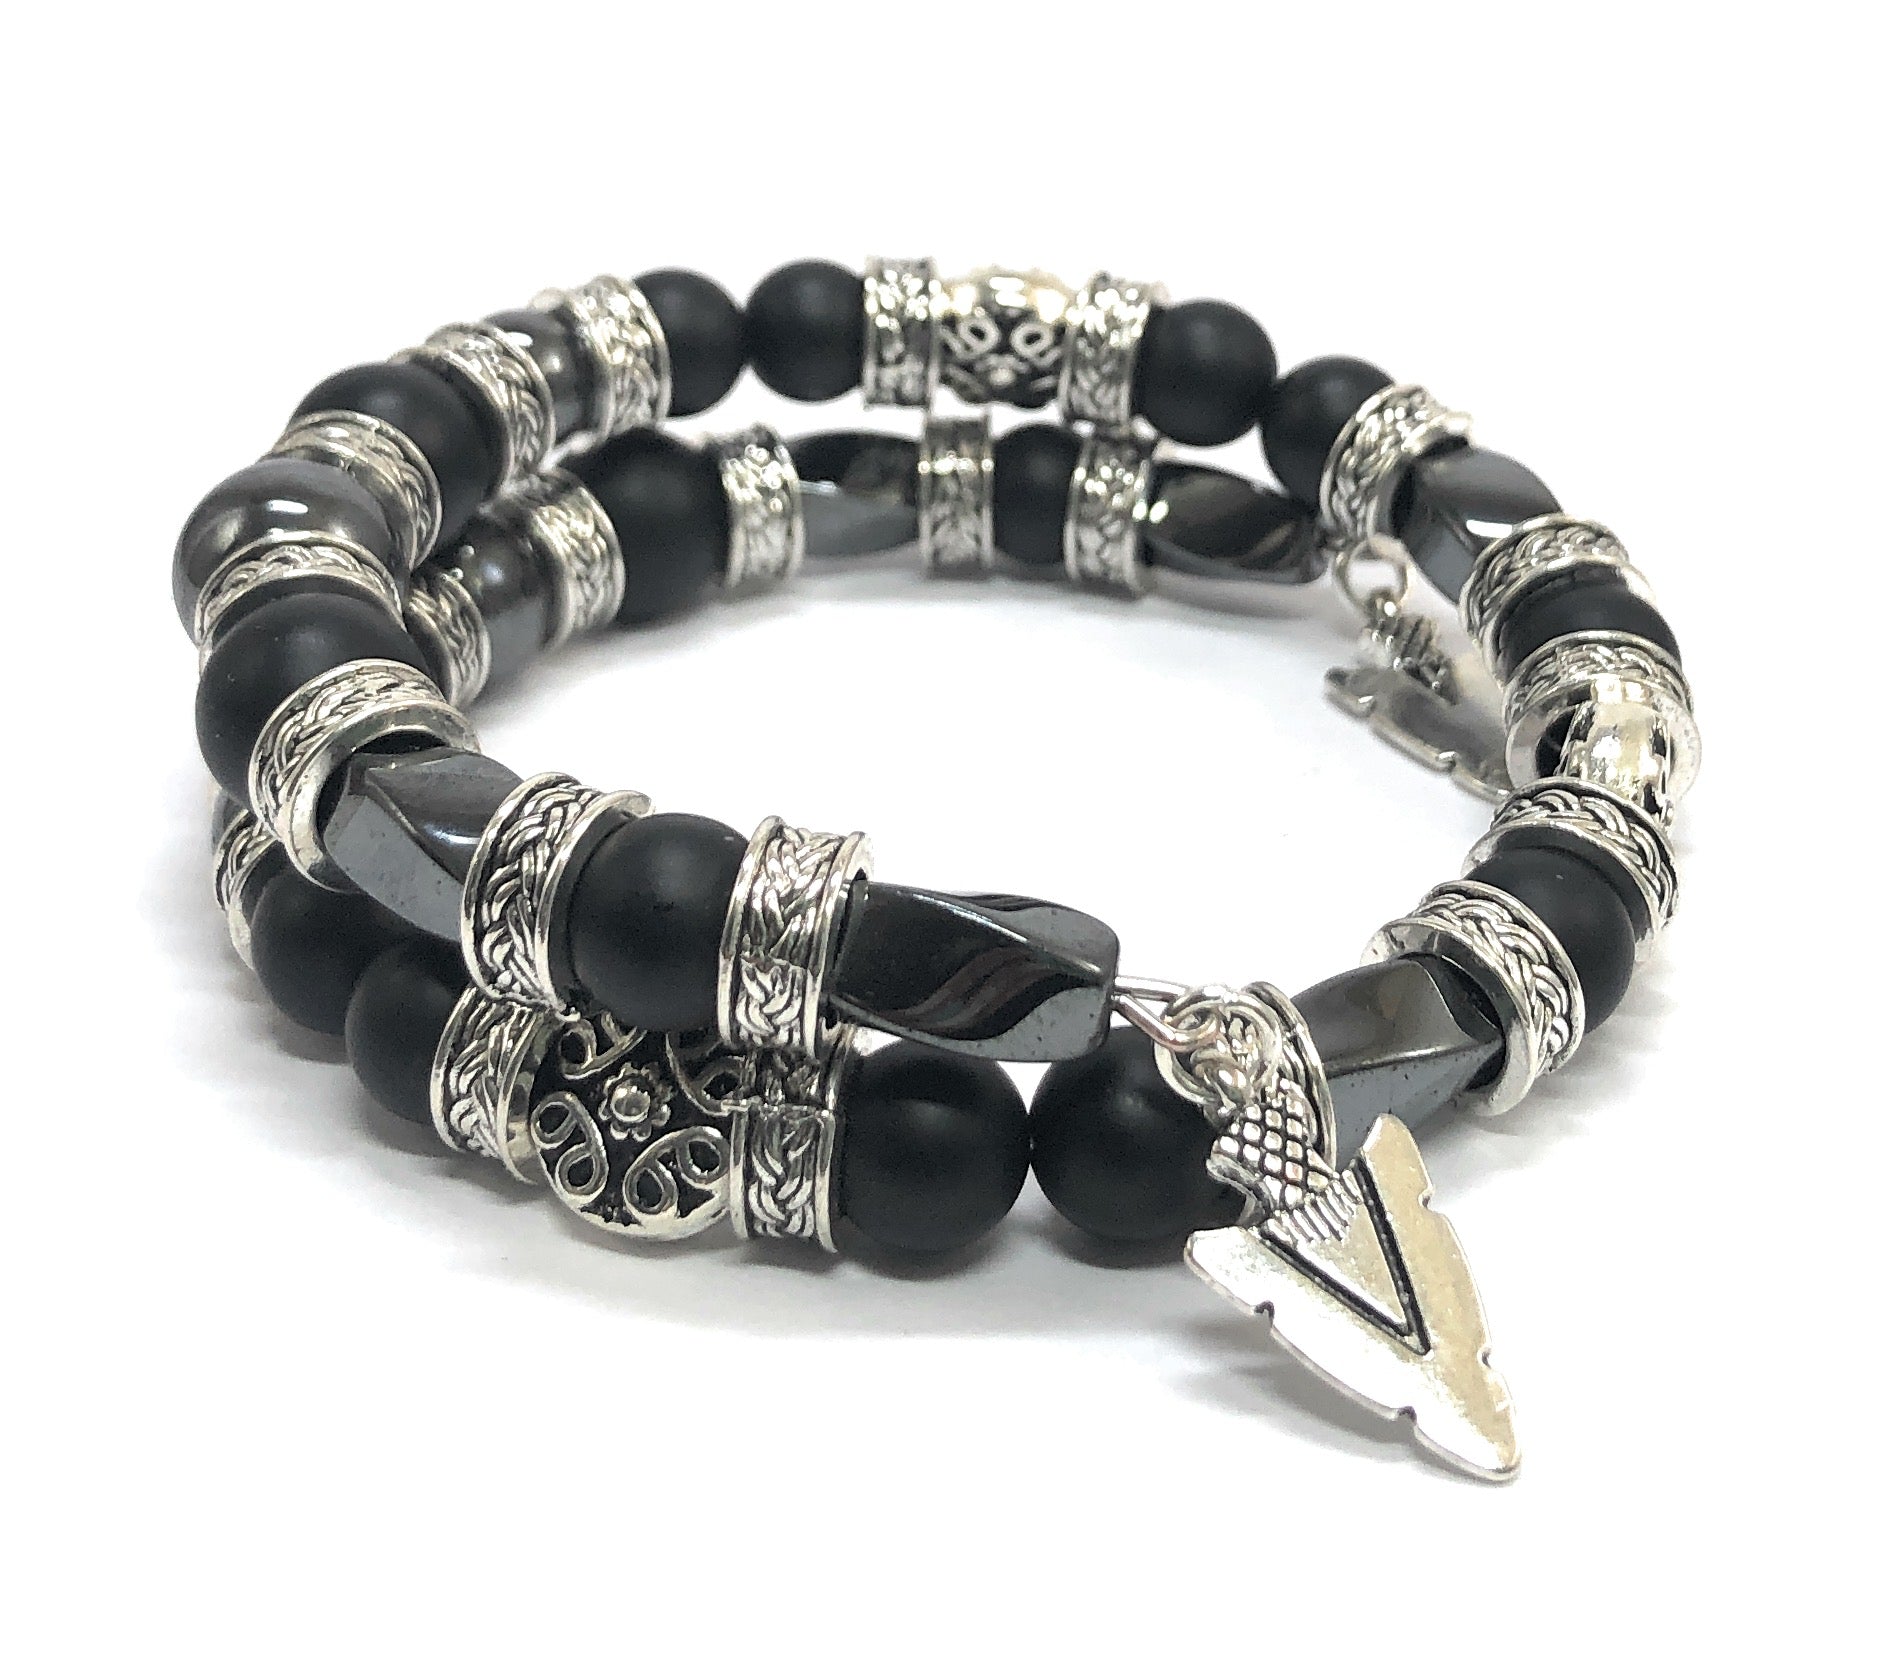 Black Onyx Bracelet, Beaded Jewelry for Men, Black & Silver, Arrowhead Bracelet